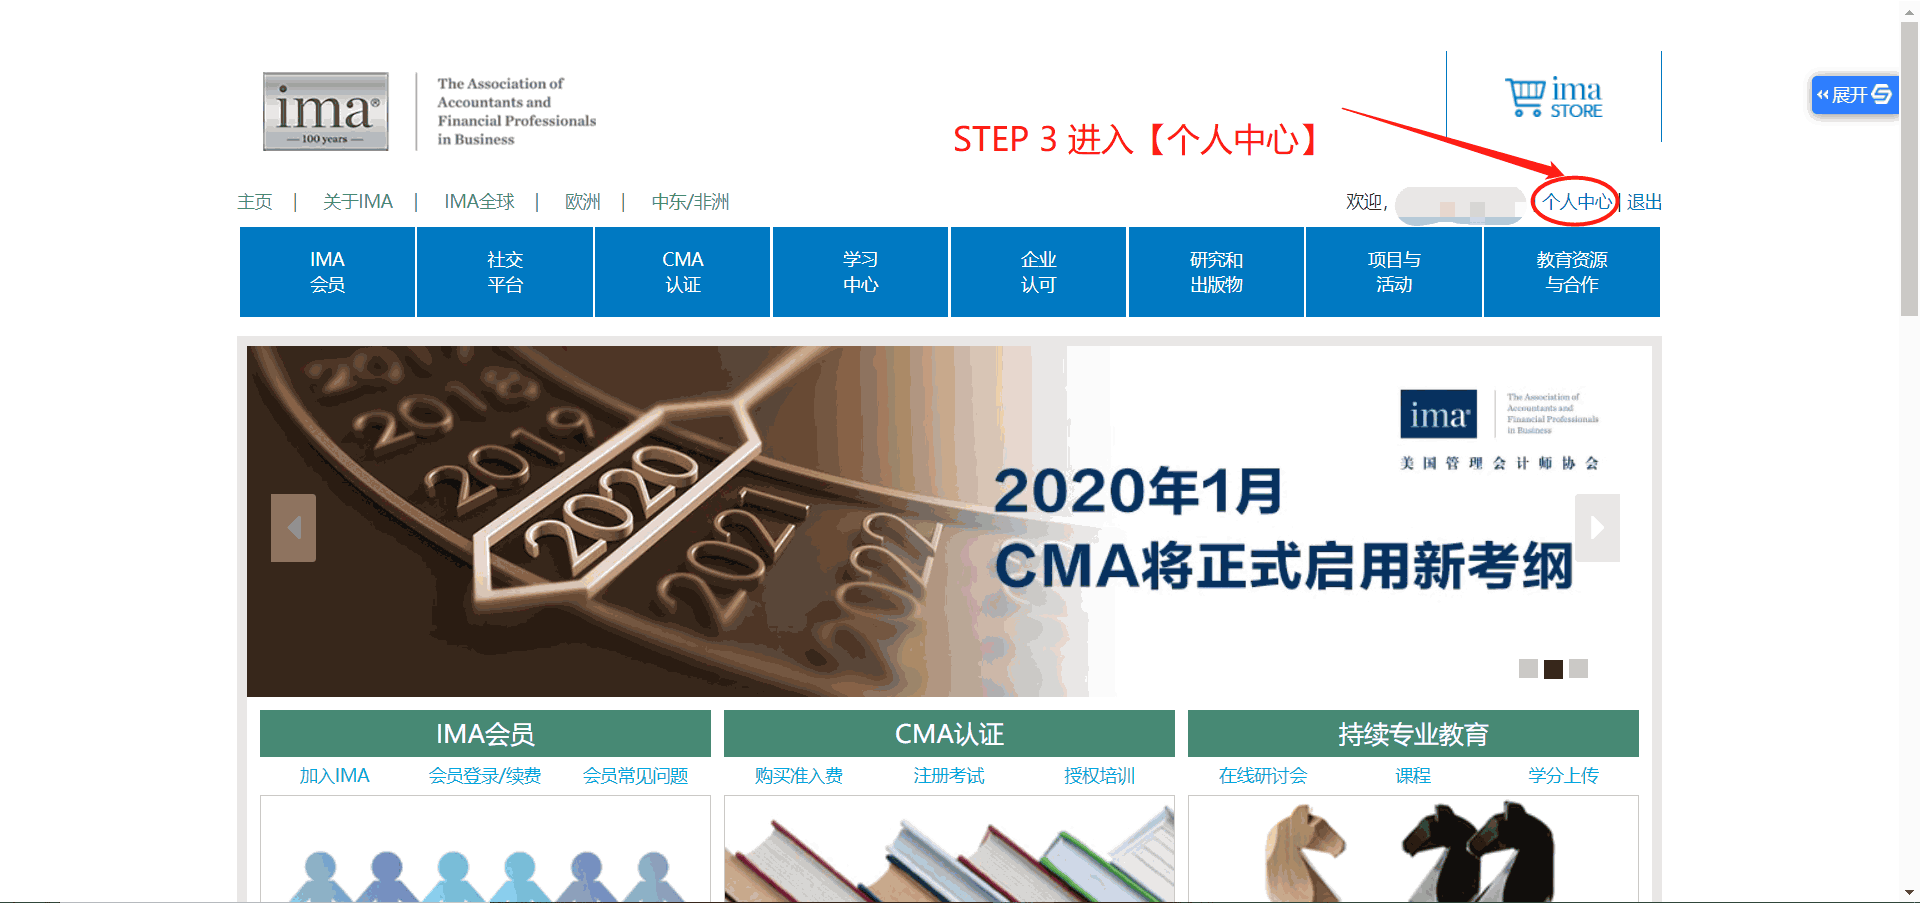 2019年04月CMA中文考试成绩怎么查询？ 第三张